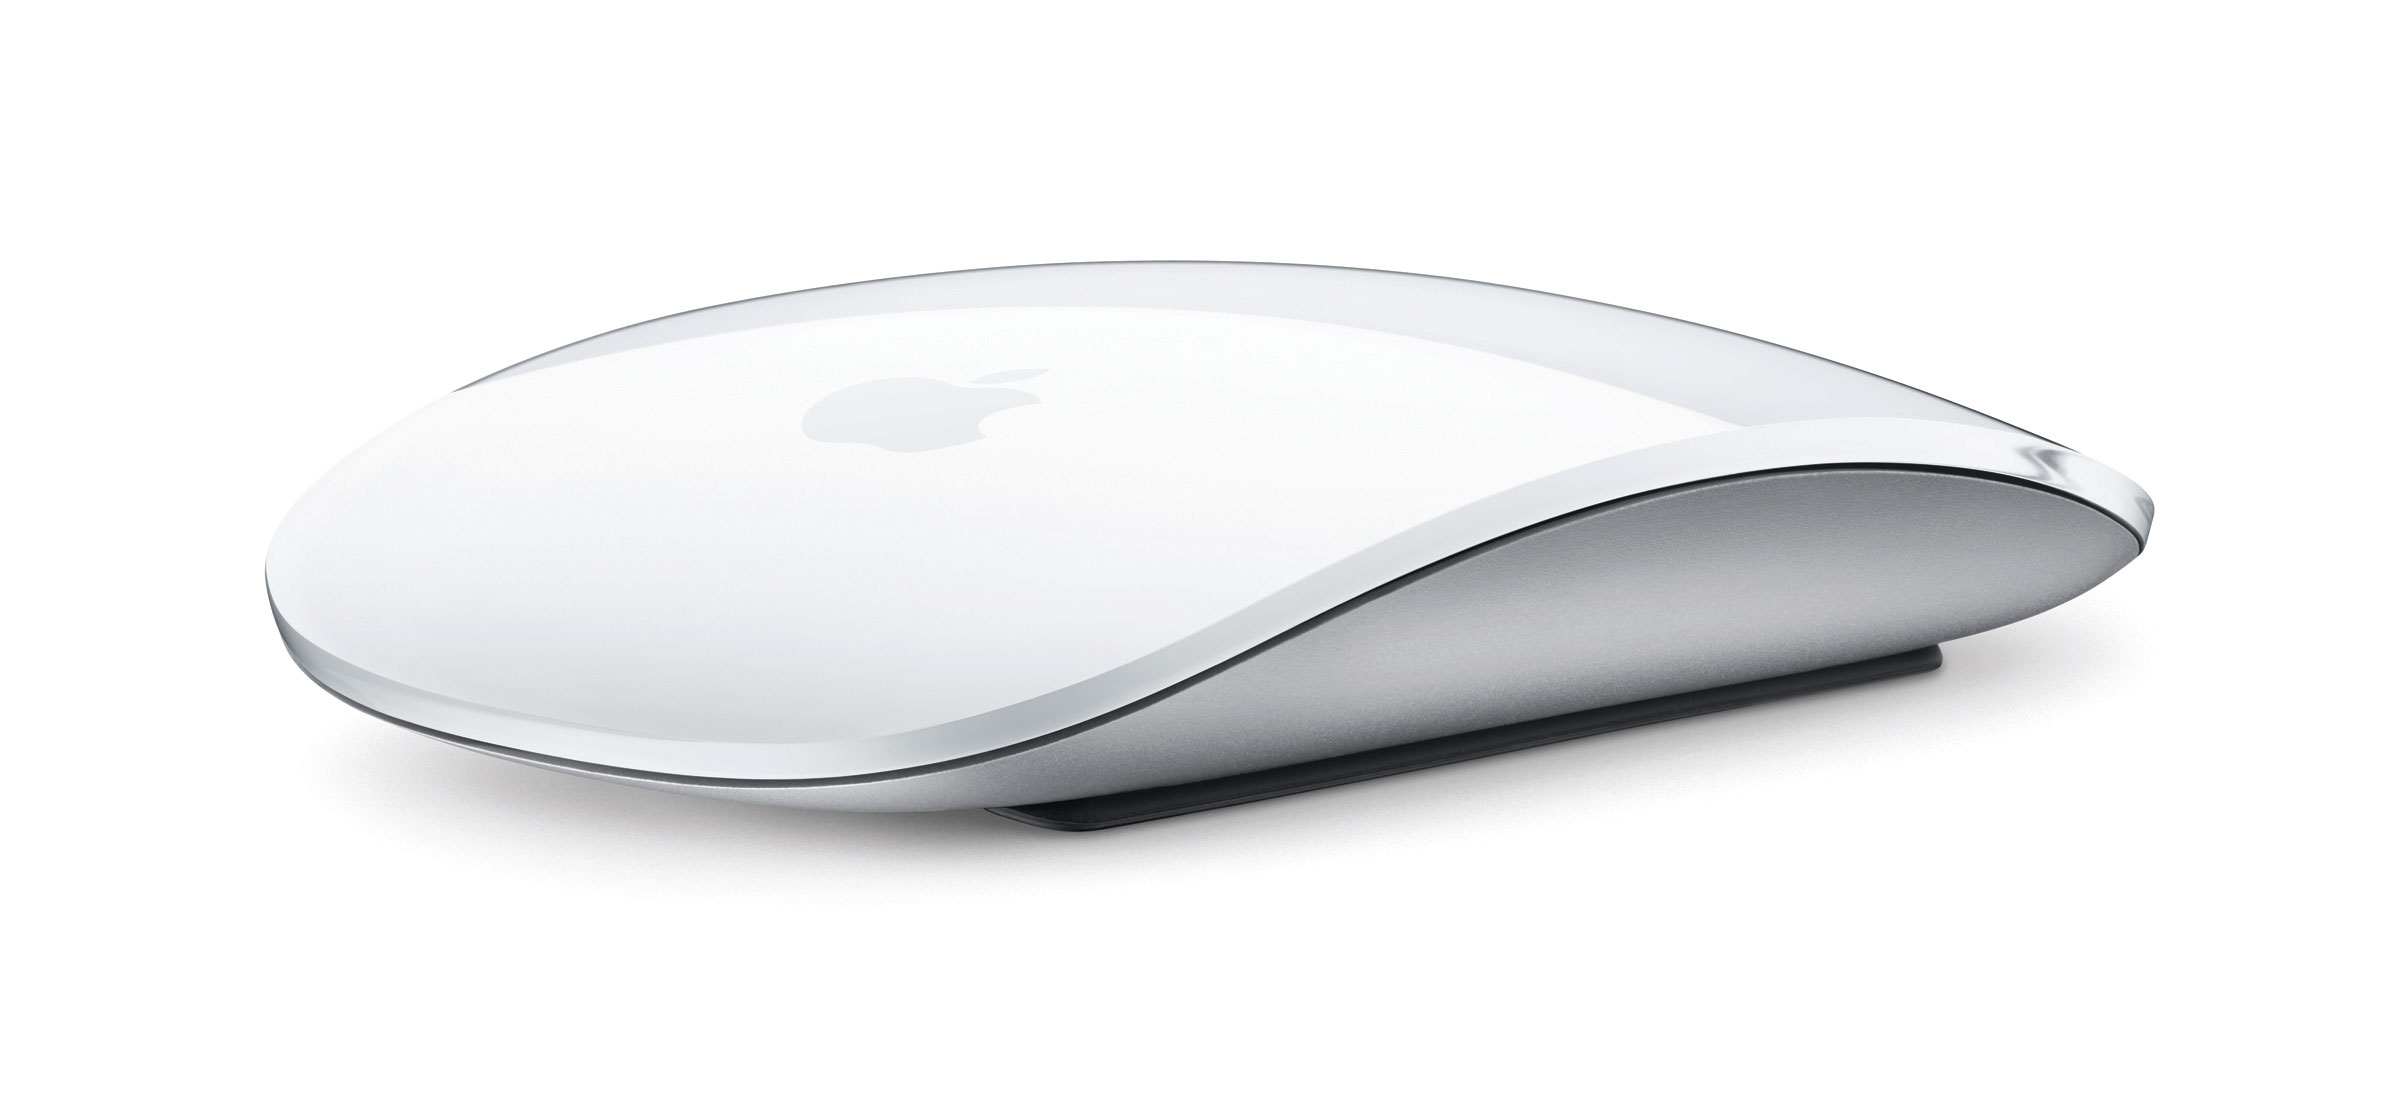 苹果Magic Mouse 多点触控鼠标精美图赏| 微型